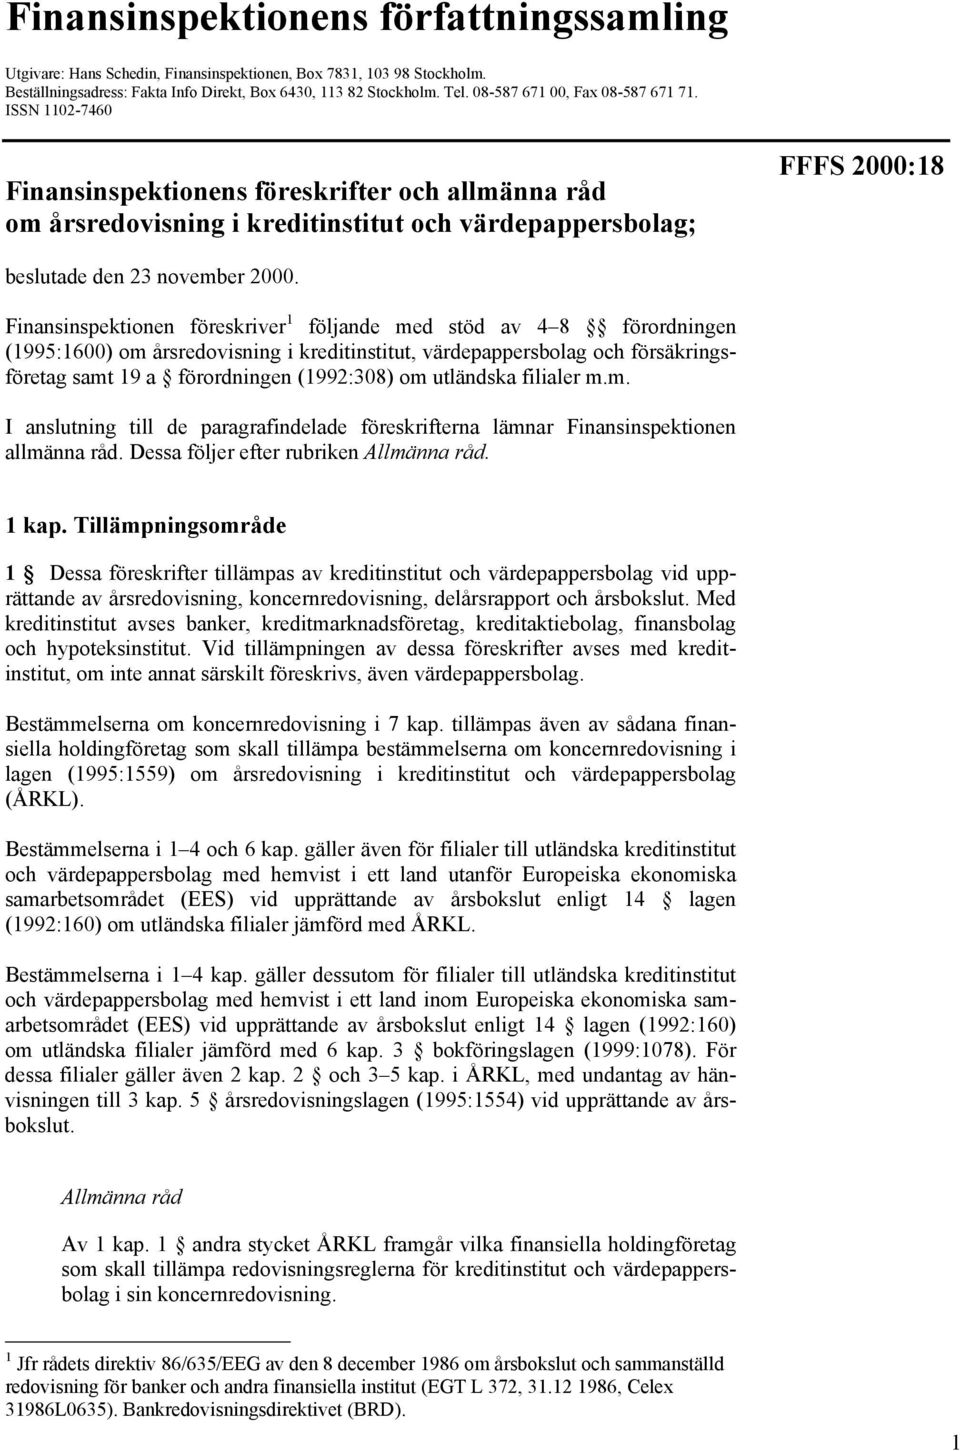 ISSN 1102-7460 Finansinspektionens föreskrifter och allmänna råd om årsredovisning i kreditinstitut och värdepappersbolag; FFFS 2000:18 beslutade den 23 november 2000.